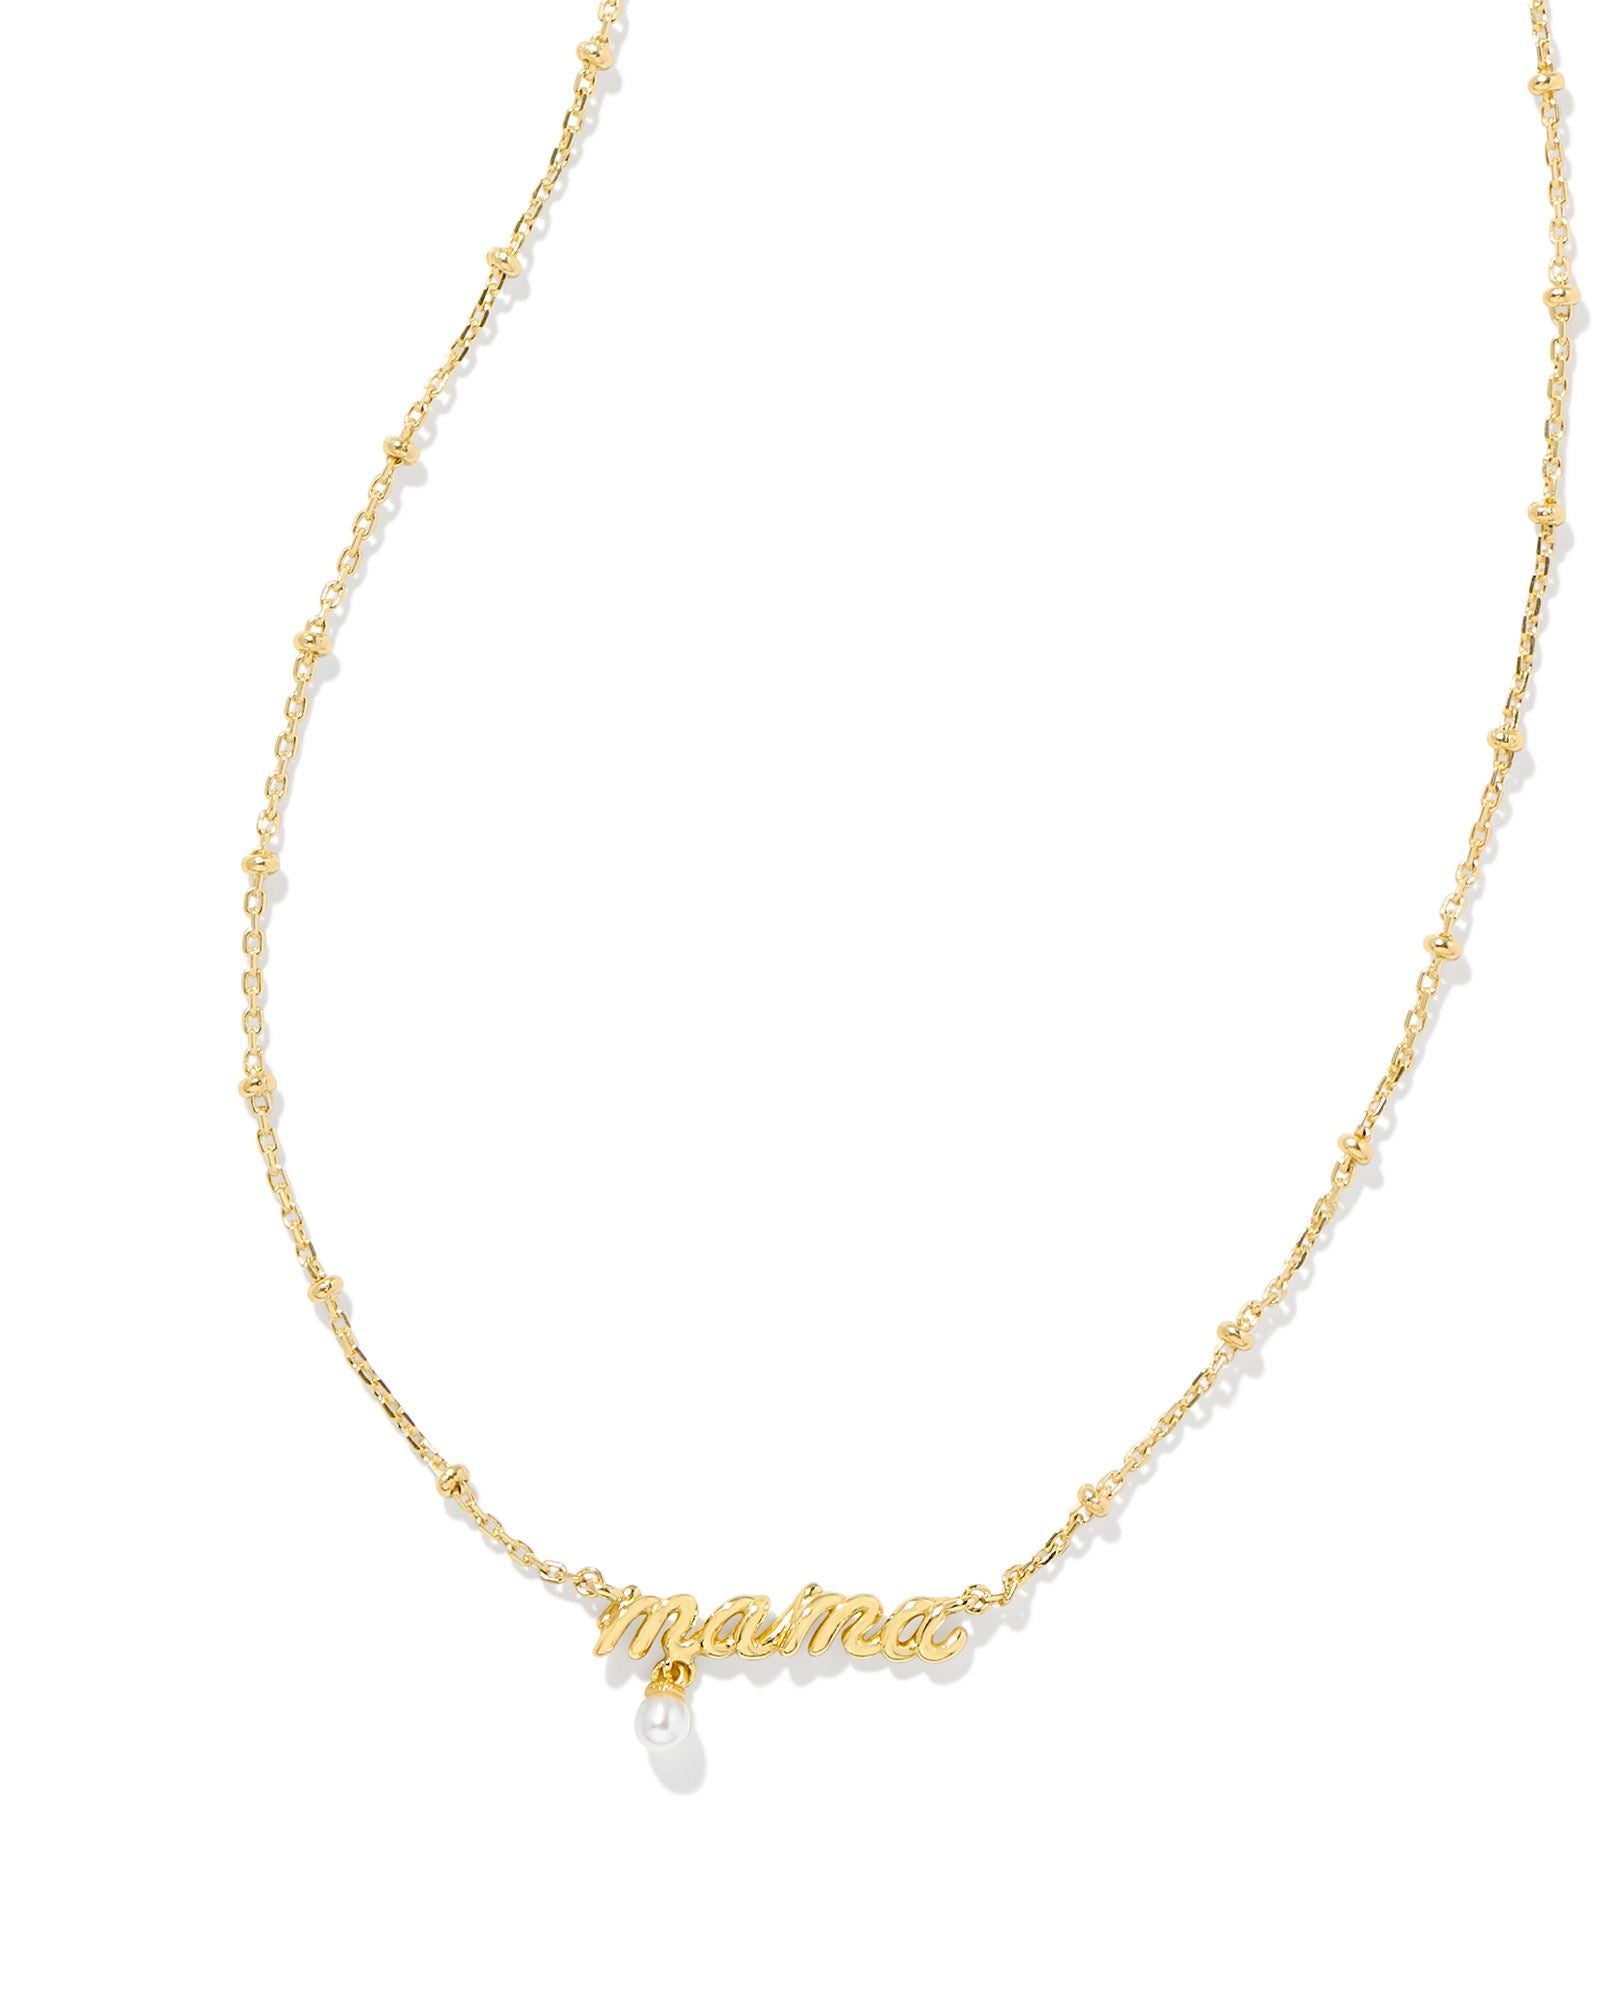 Kendra Scott Mama Script Pendant Necklace Gold White Pearl